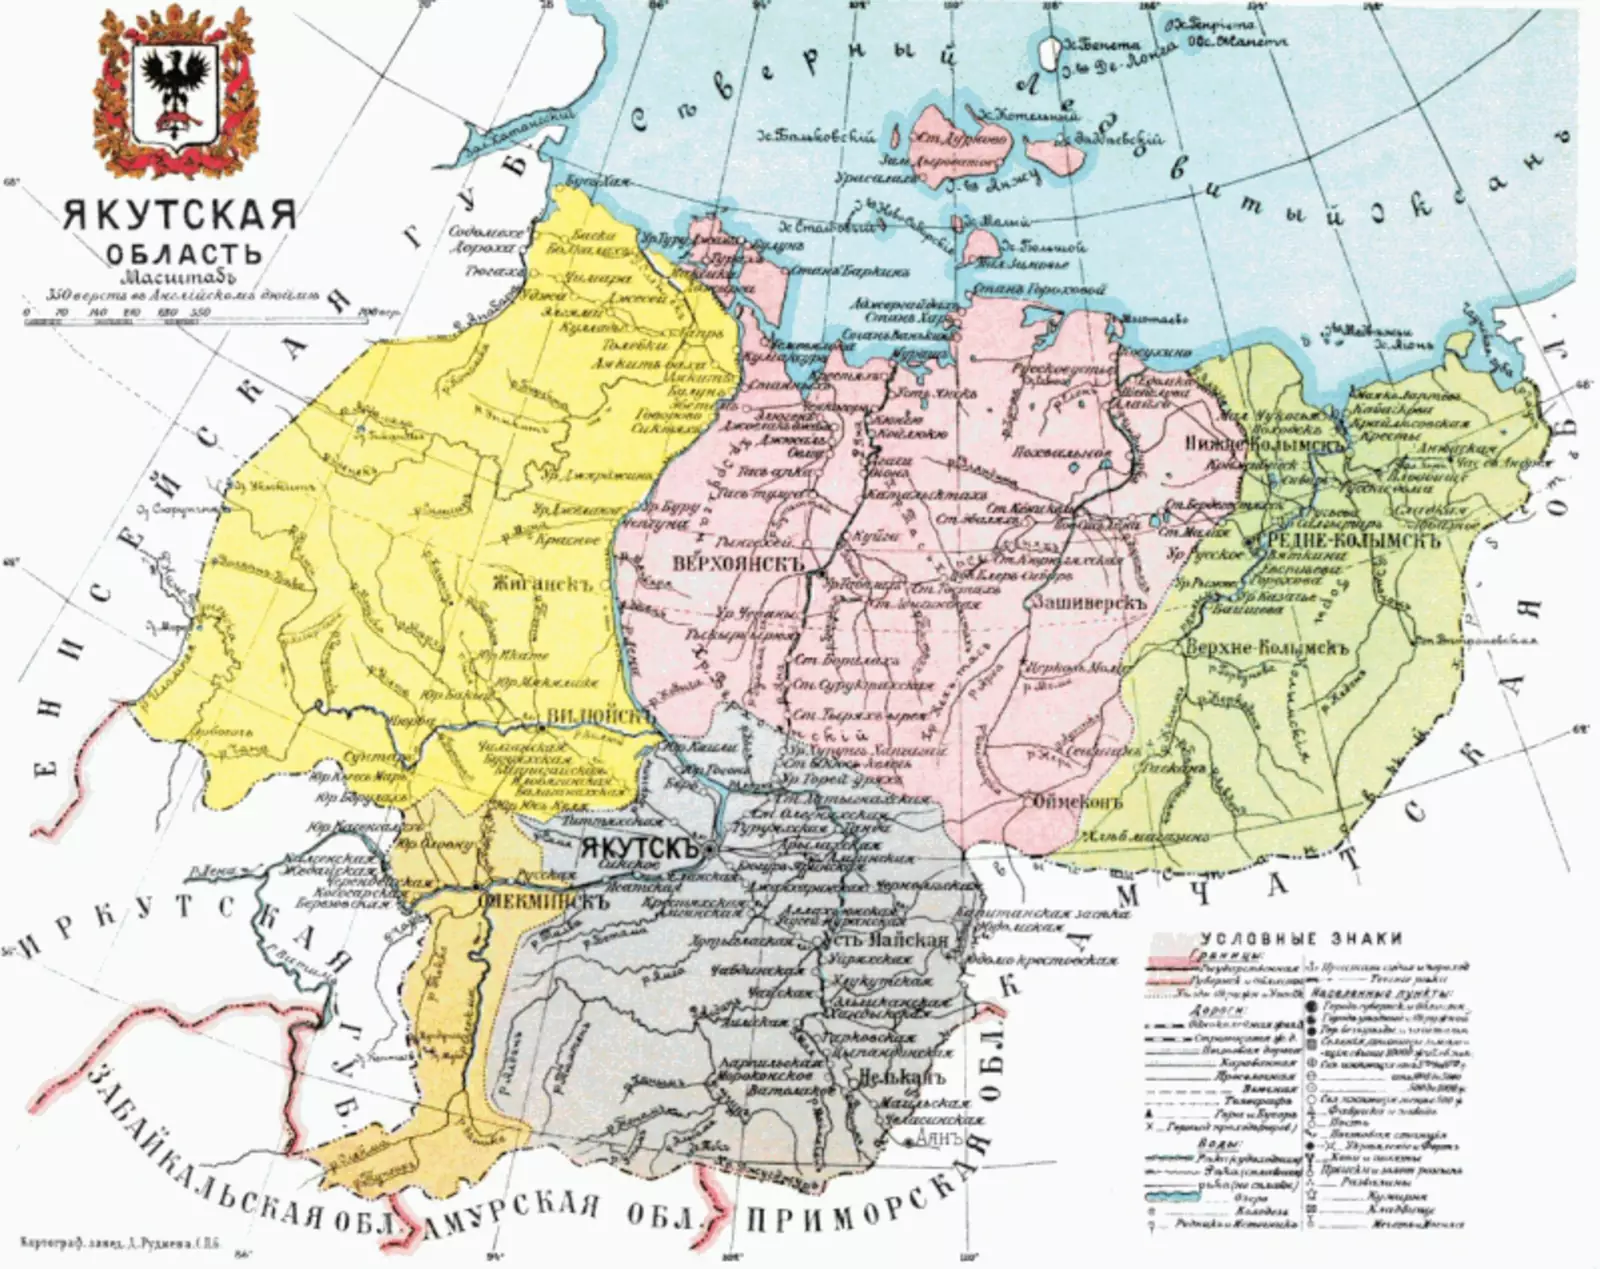 Якутская область в "Атласе России" 1911 года